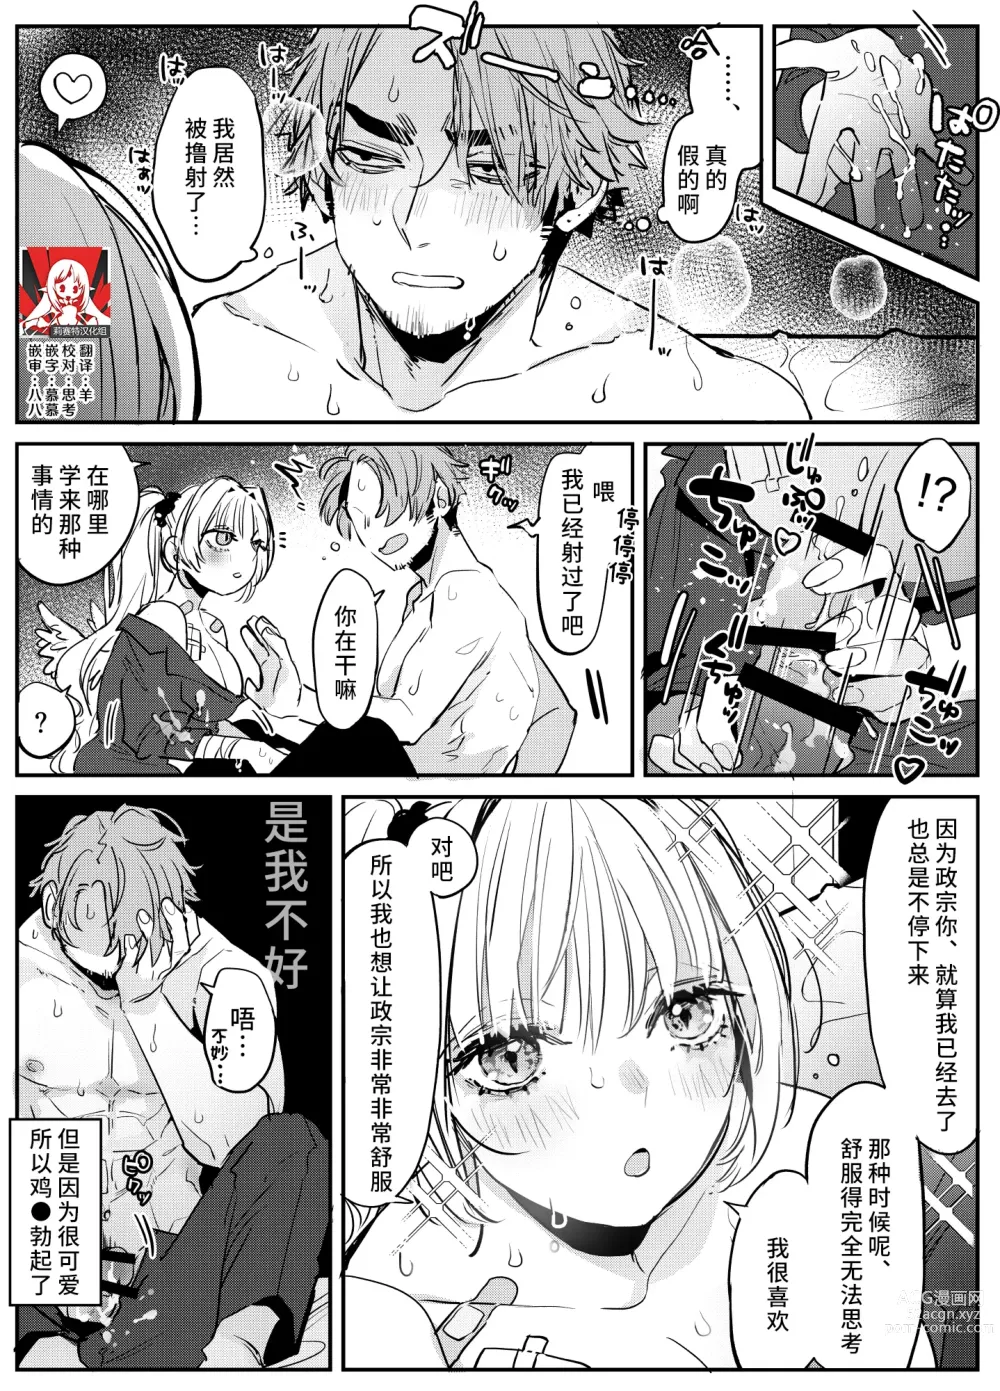 Page 1 of manga 关于沉浸在激烈口交游戏中将浓精射入嘴里的恋人的事